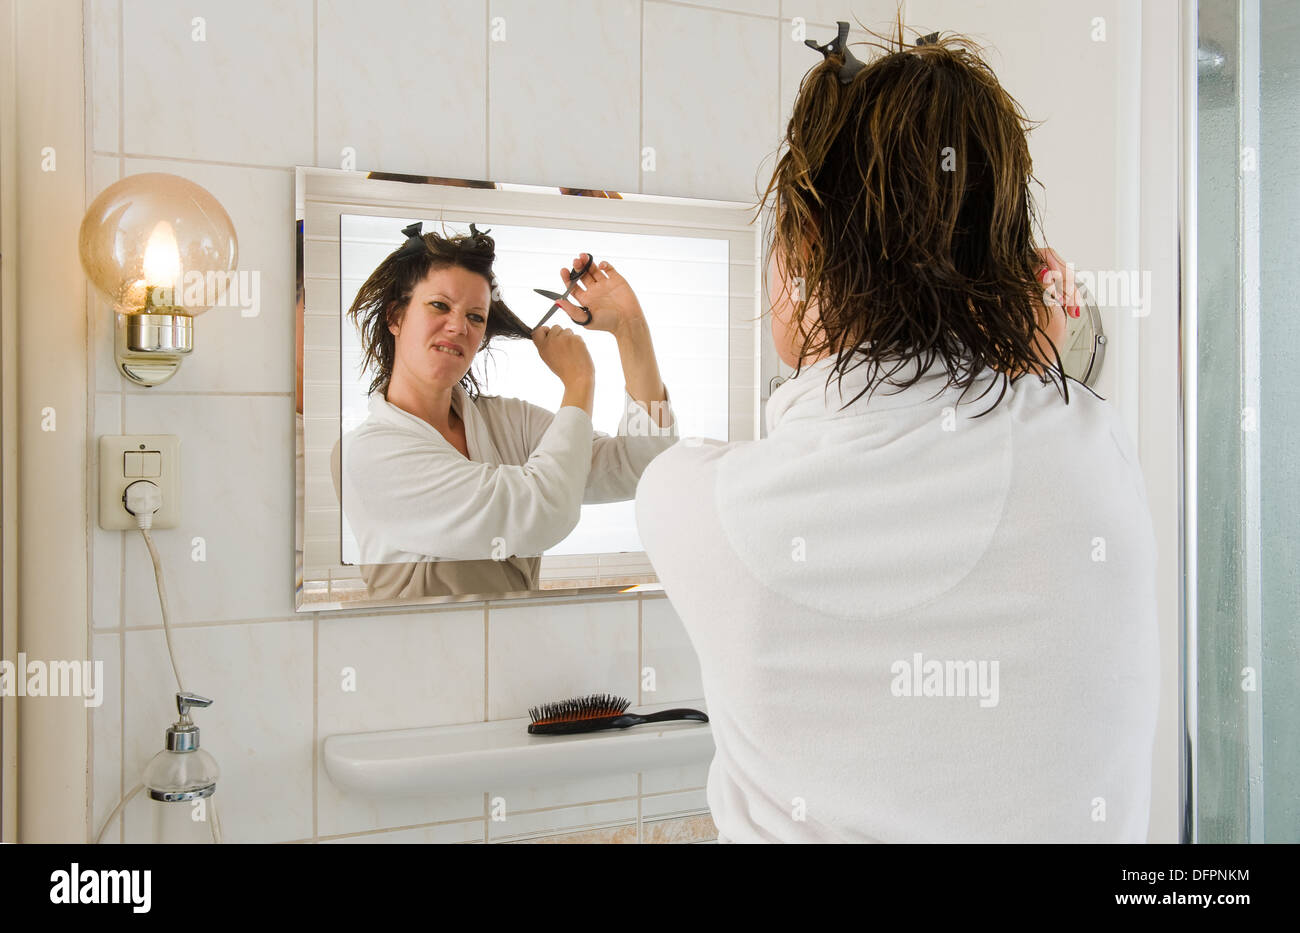 Eine Frau schaut in den Spiegel im Bad und mit einem "bad Hair Day", und will ihre Haare schneiden Stockfoto